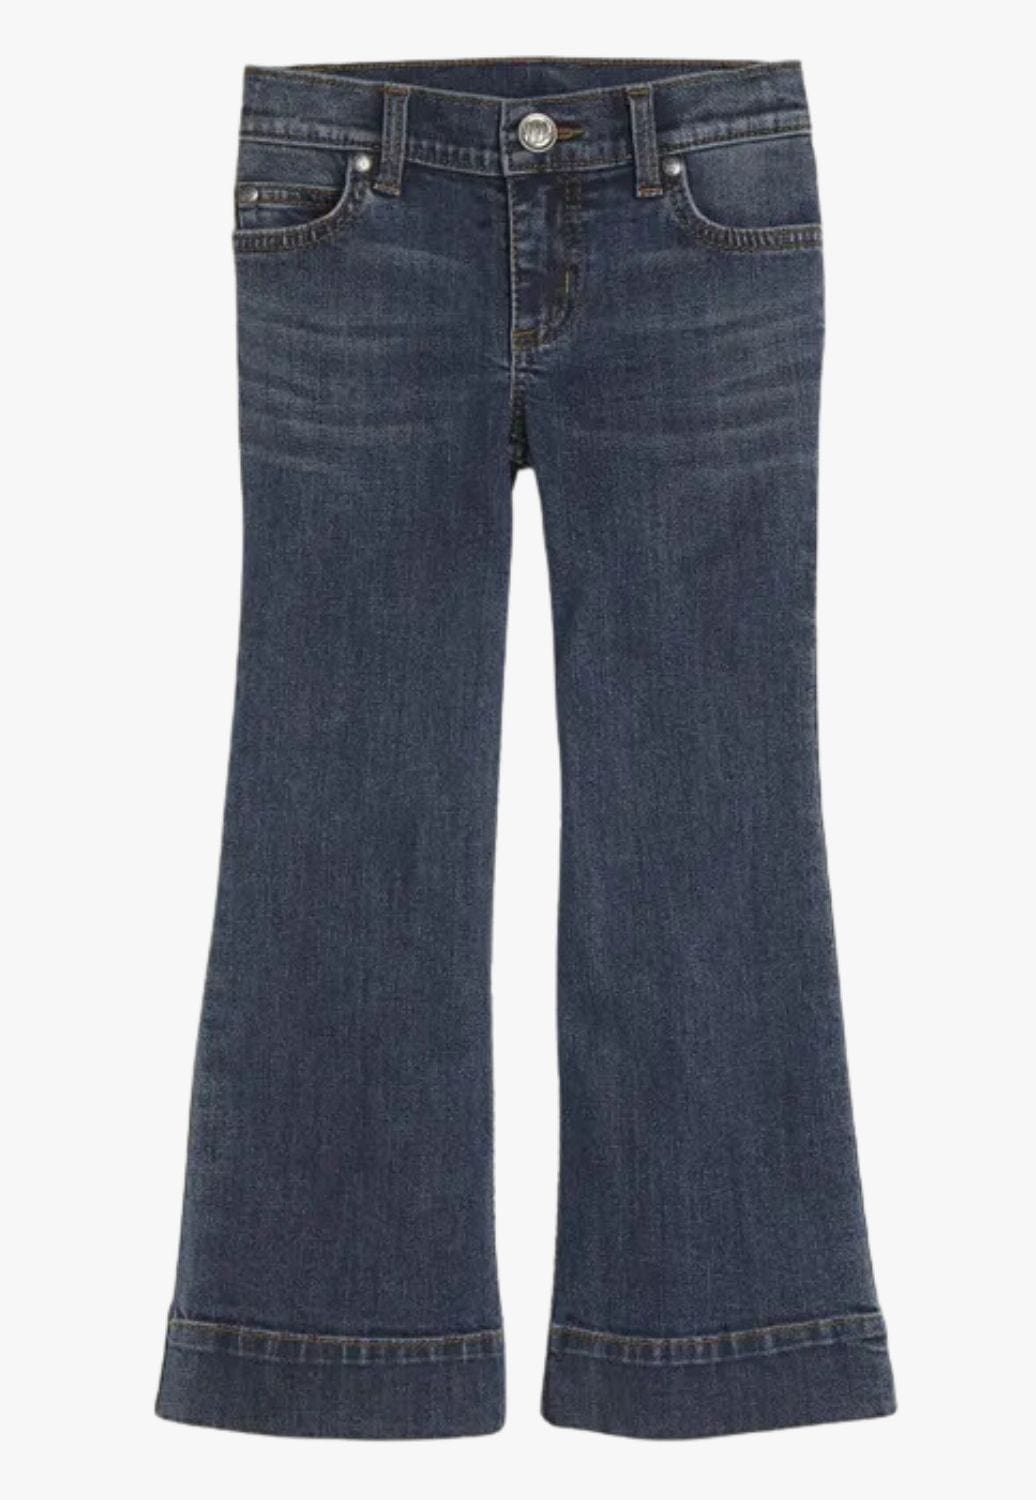 Wrangler Jeans Mens Size 42 X 30 Blue Straight Leg Pants | eBay